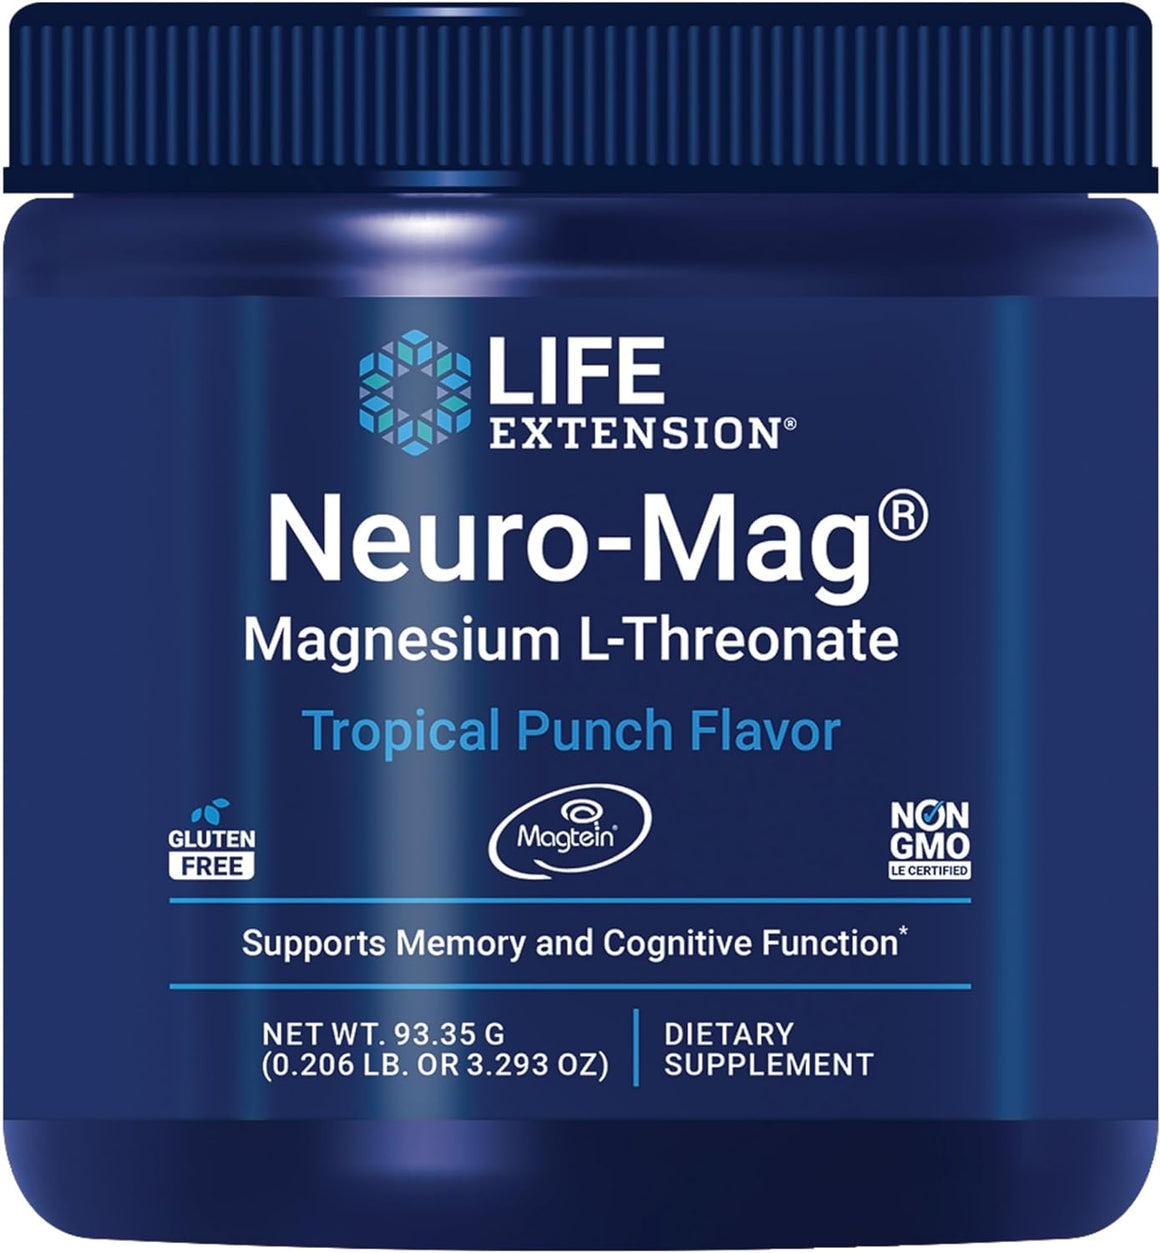 Neuro-Mag® Magnesium L-Threonate - Life Extension